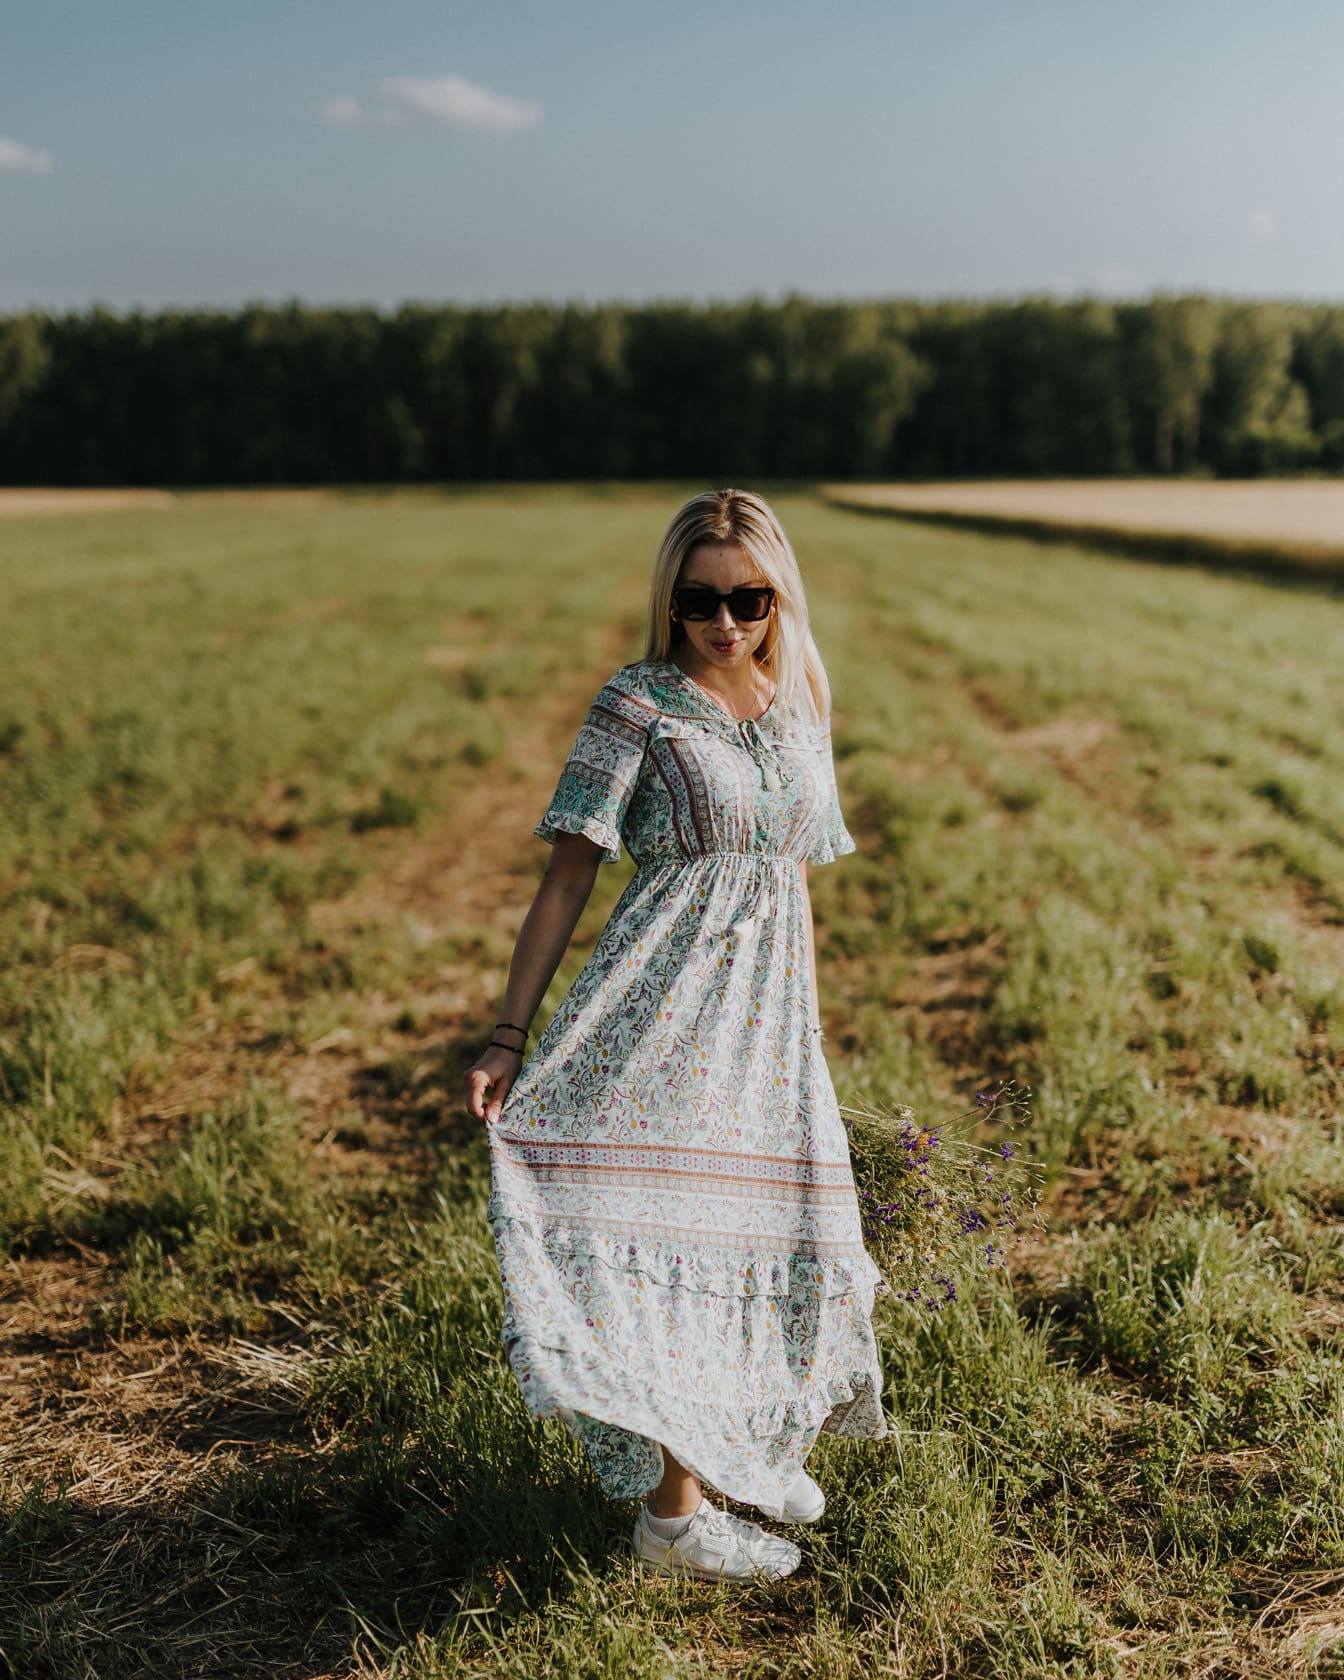 La giovane donna indossa un vestito floreale fantasia nel campo